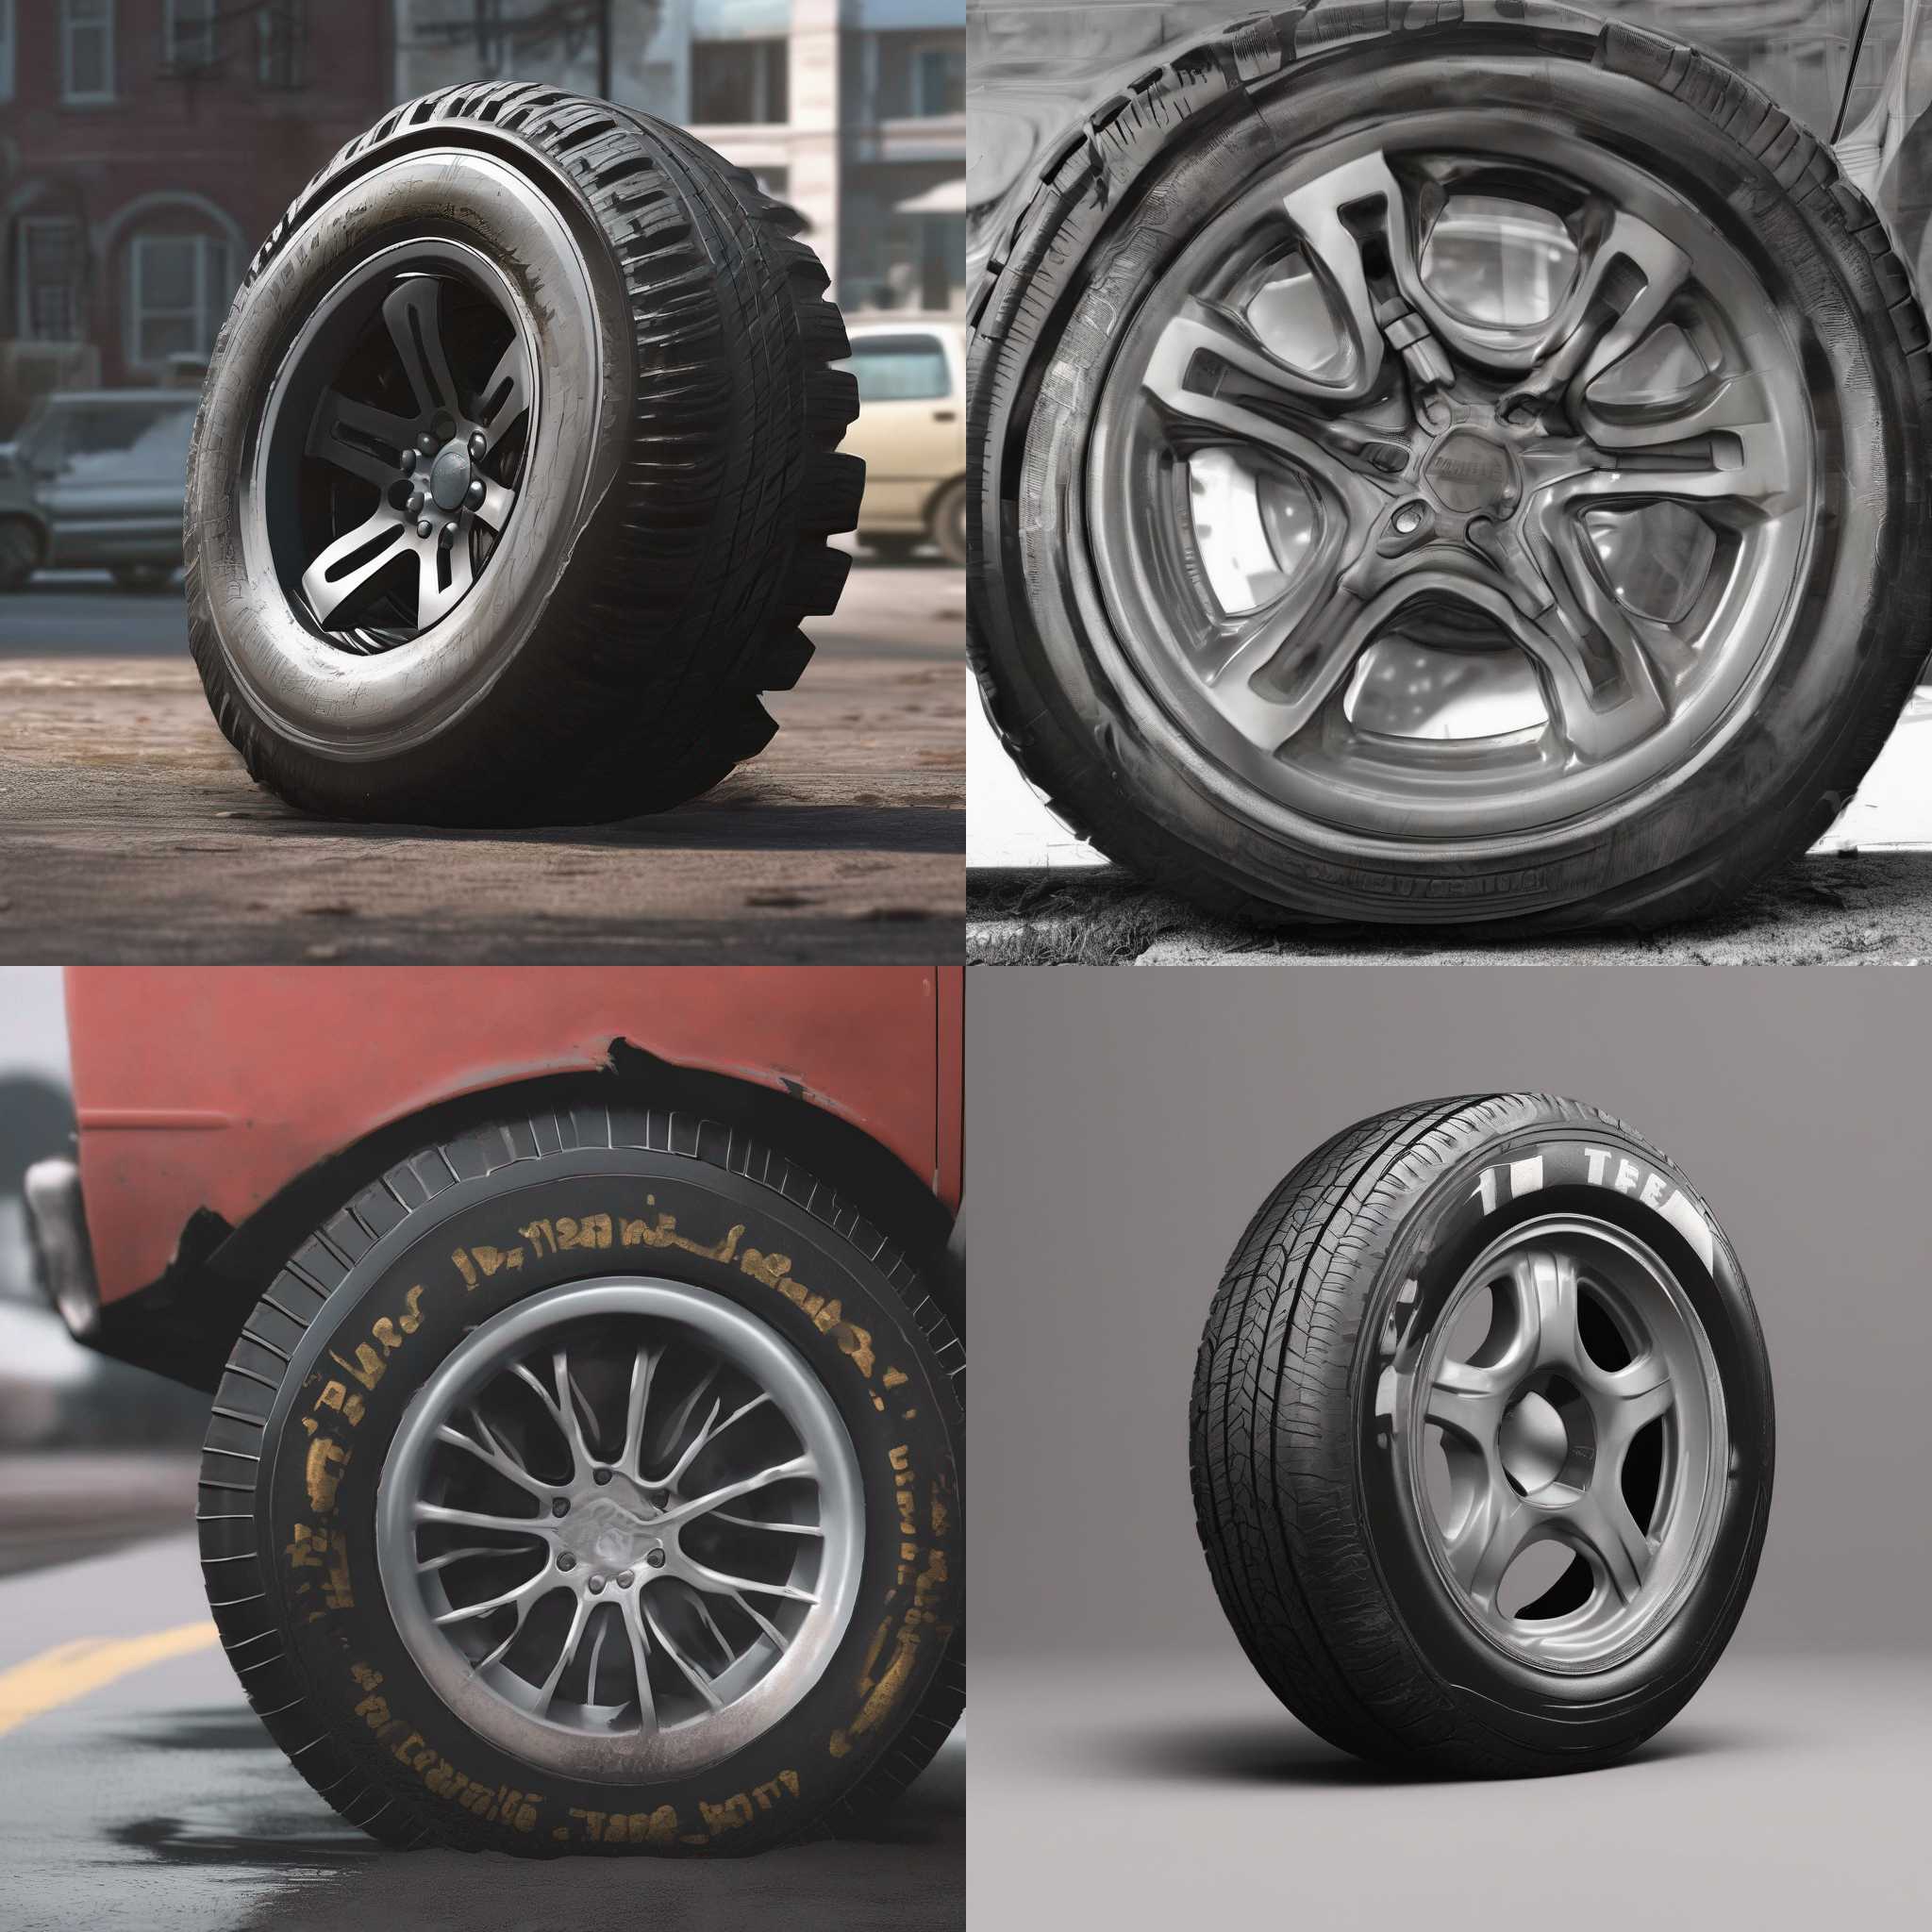 A car tire